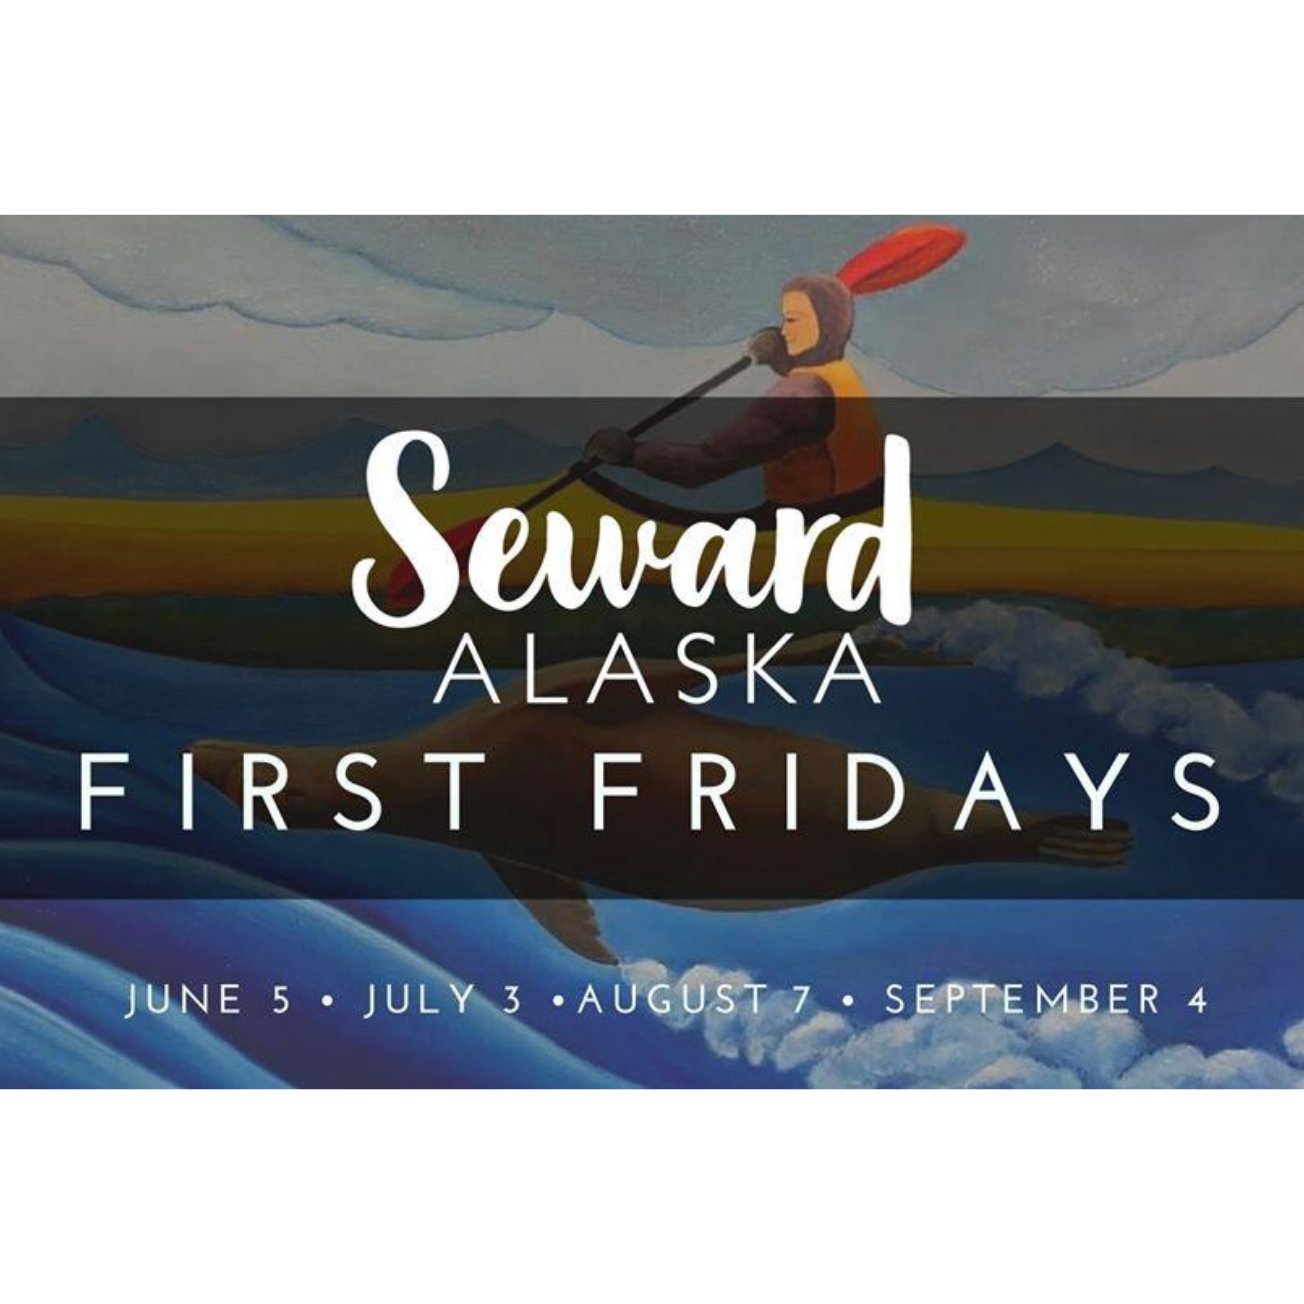 Seward Alaska First Fridays